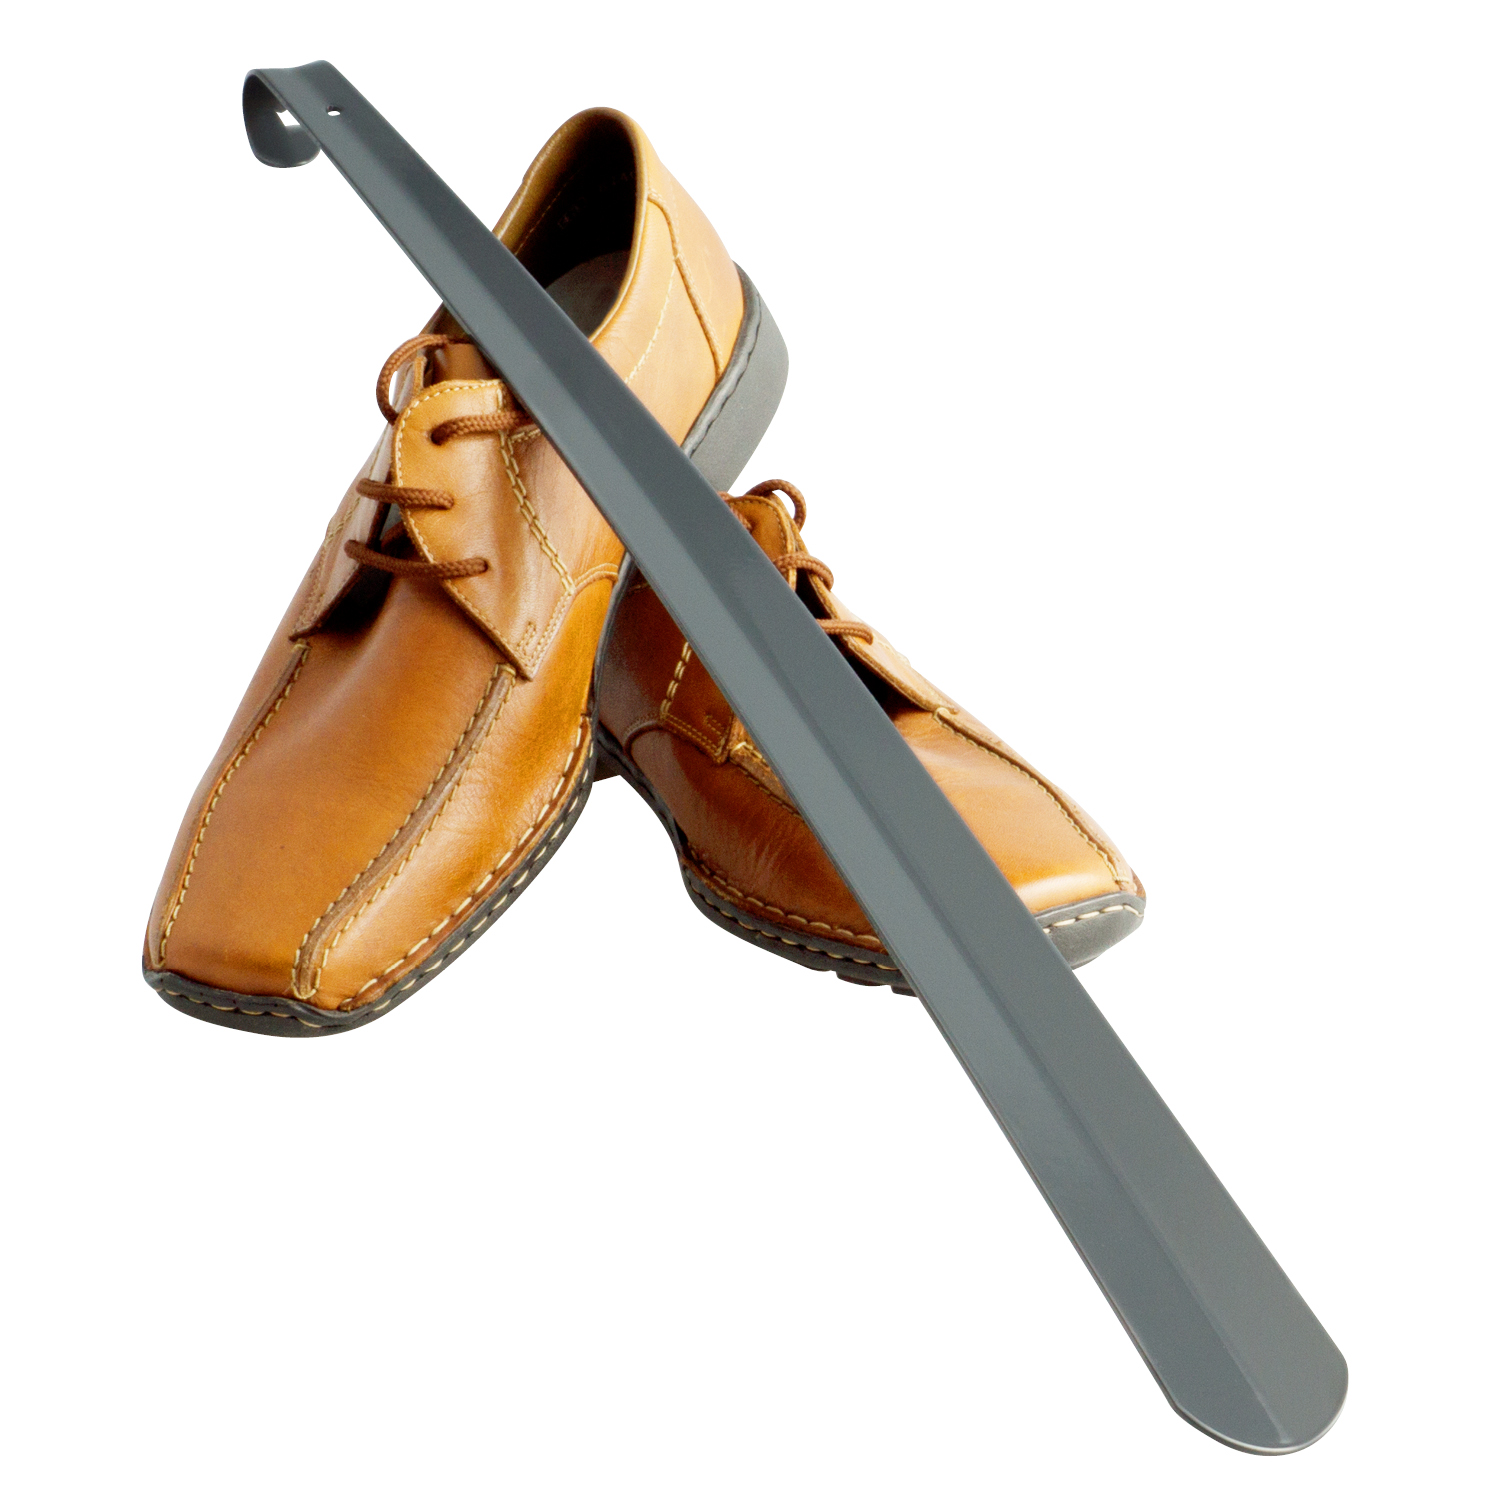 Schuhlöffel, Komfort-Schuhanzieher, groß 58 cm, aus Metall gefertigt, grau lackiert